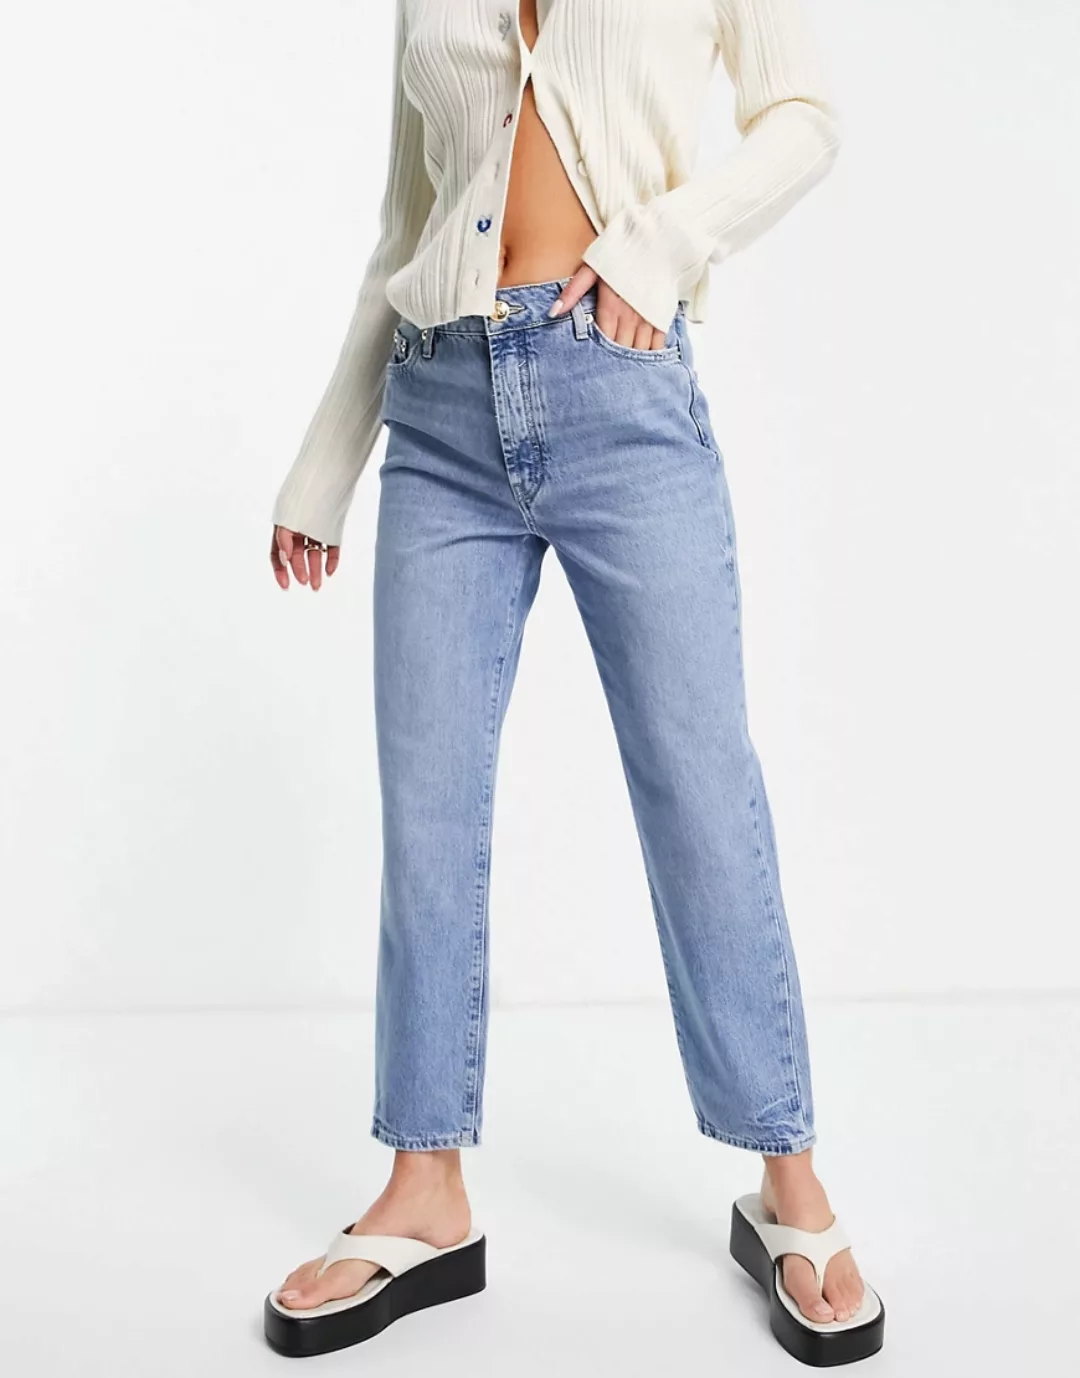 River Island – Blair – Jeans mit geradem Schnitt in Buzzy-Blau günstig online kaufen